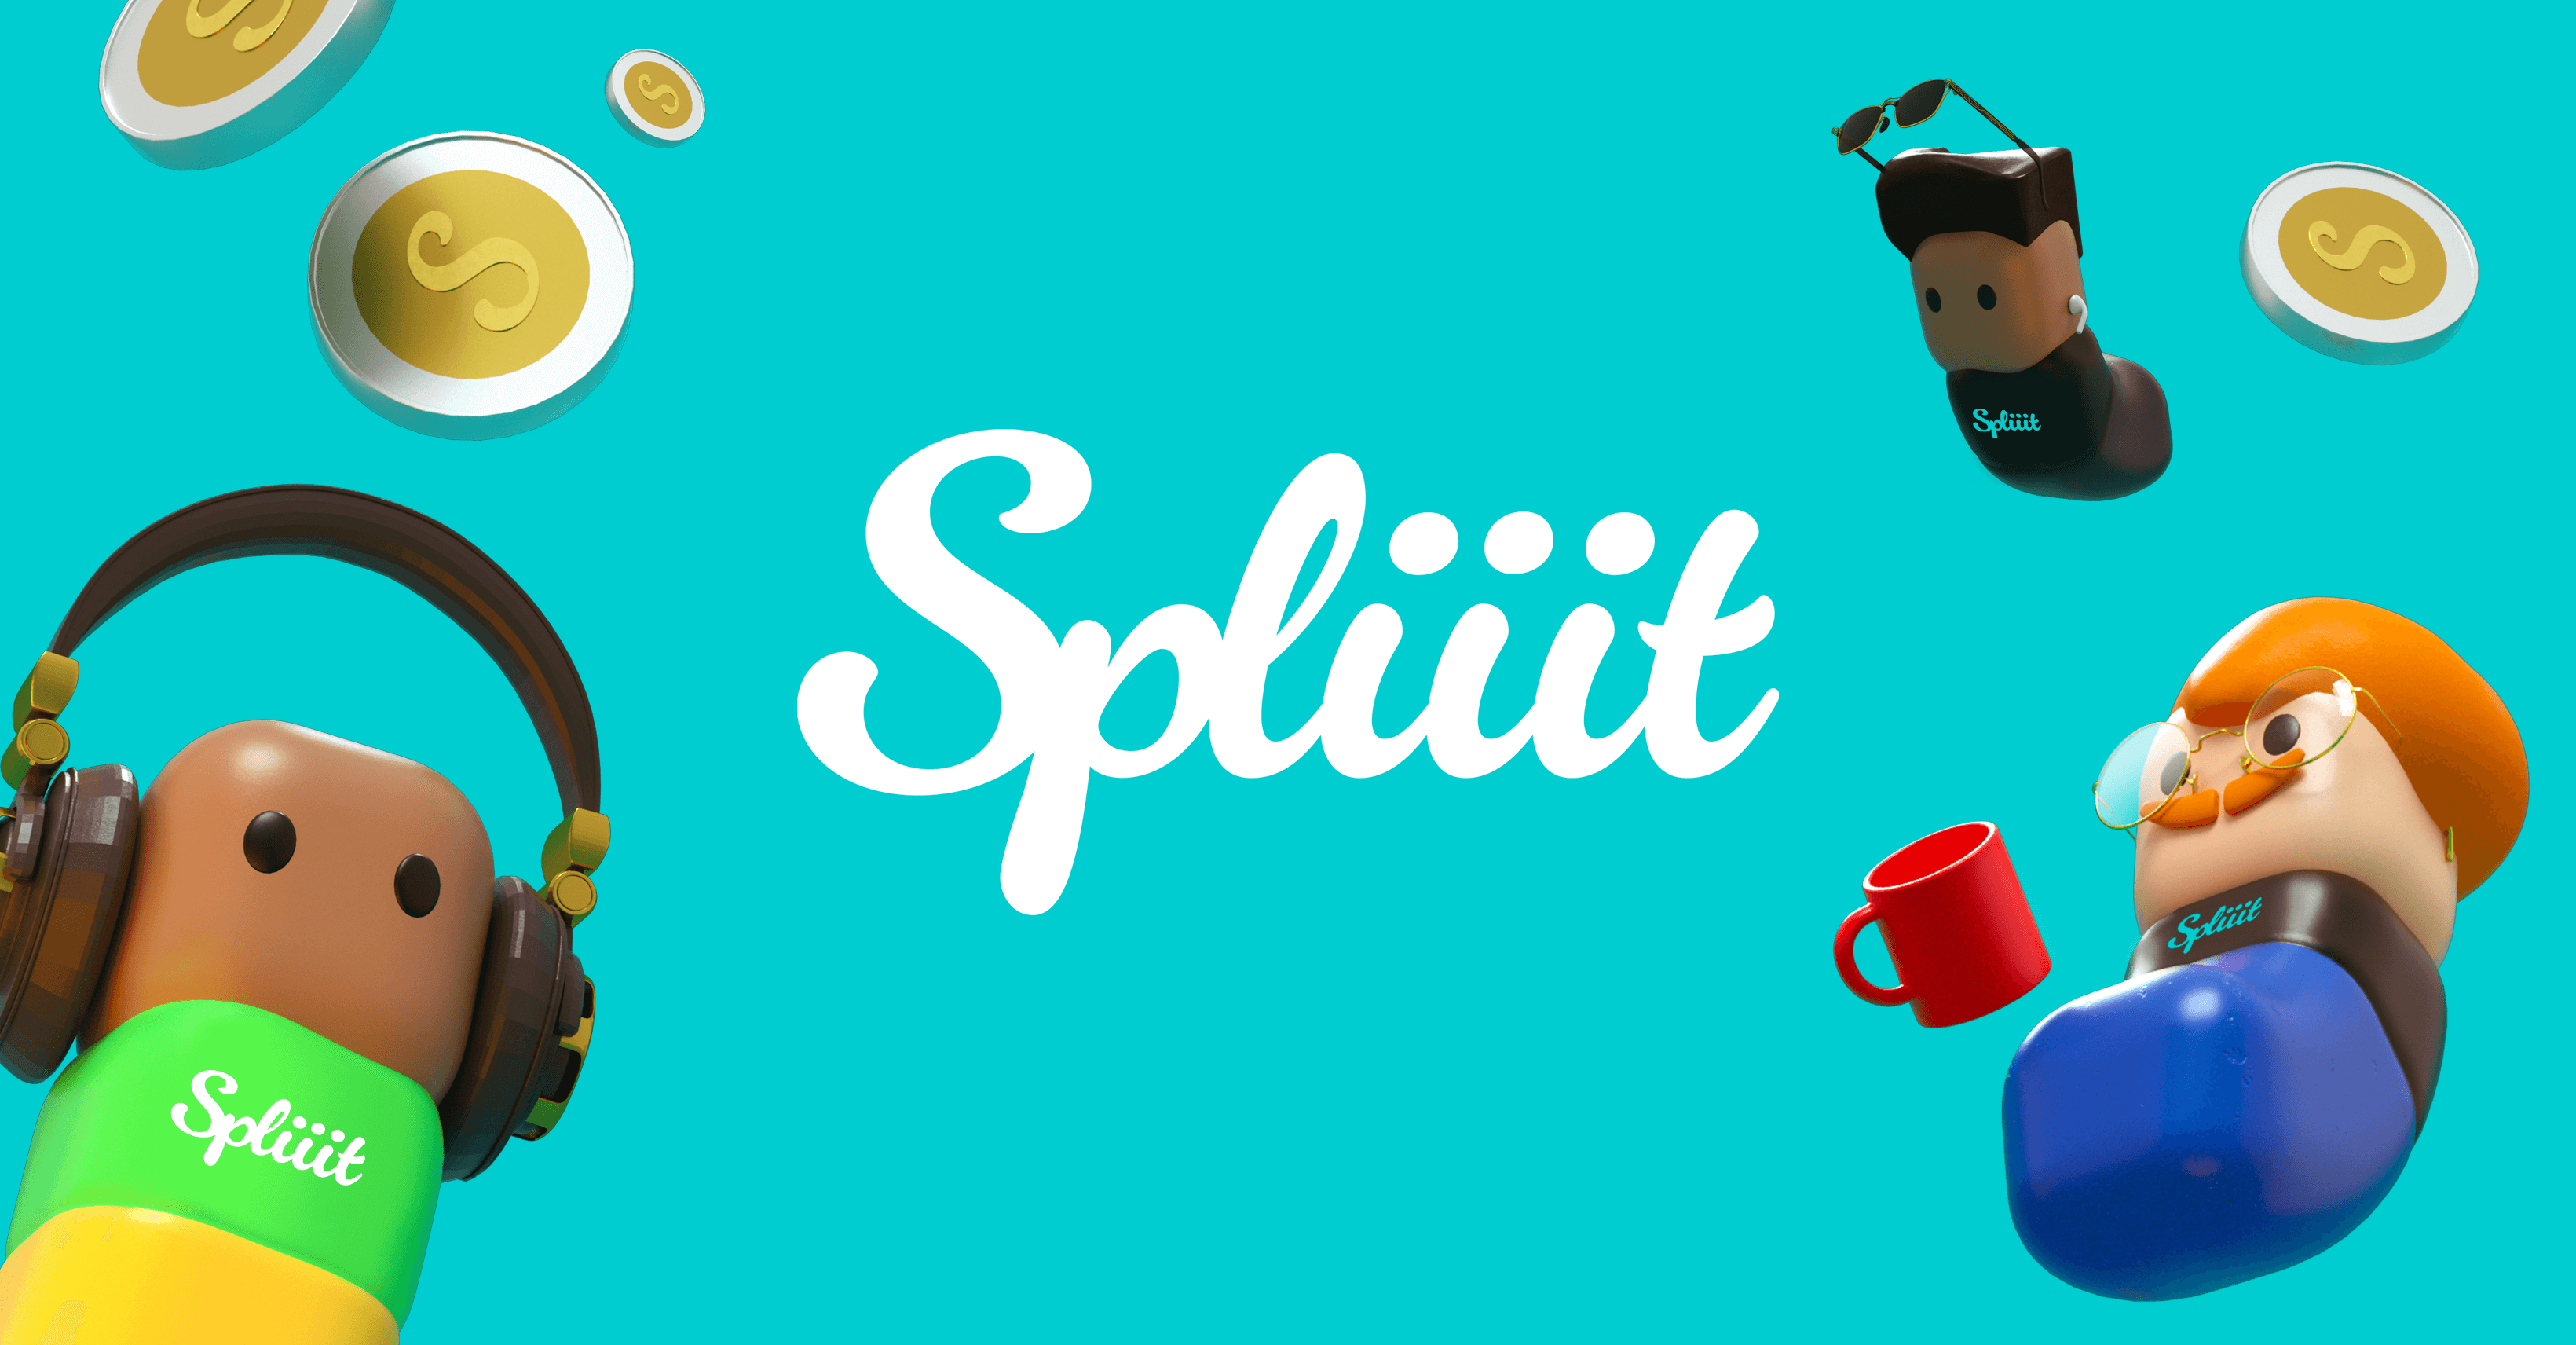 www.spliiit.com